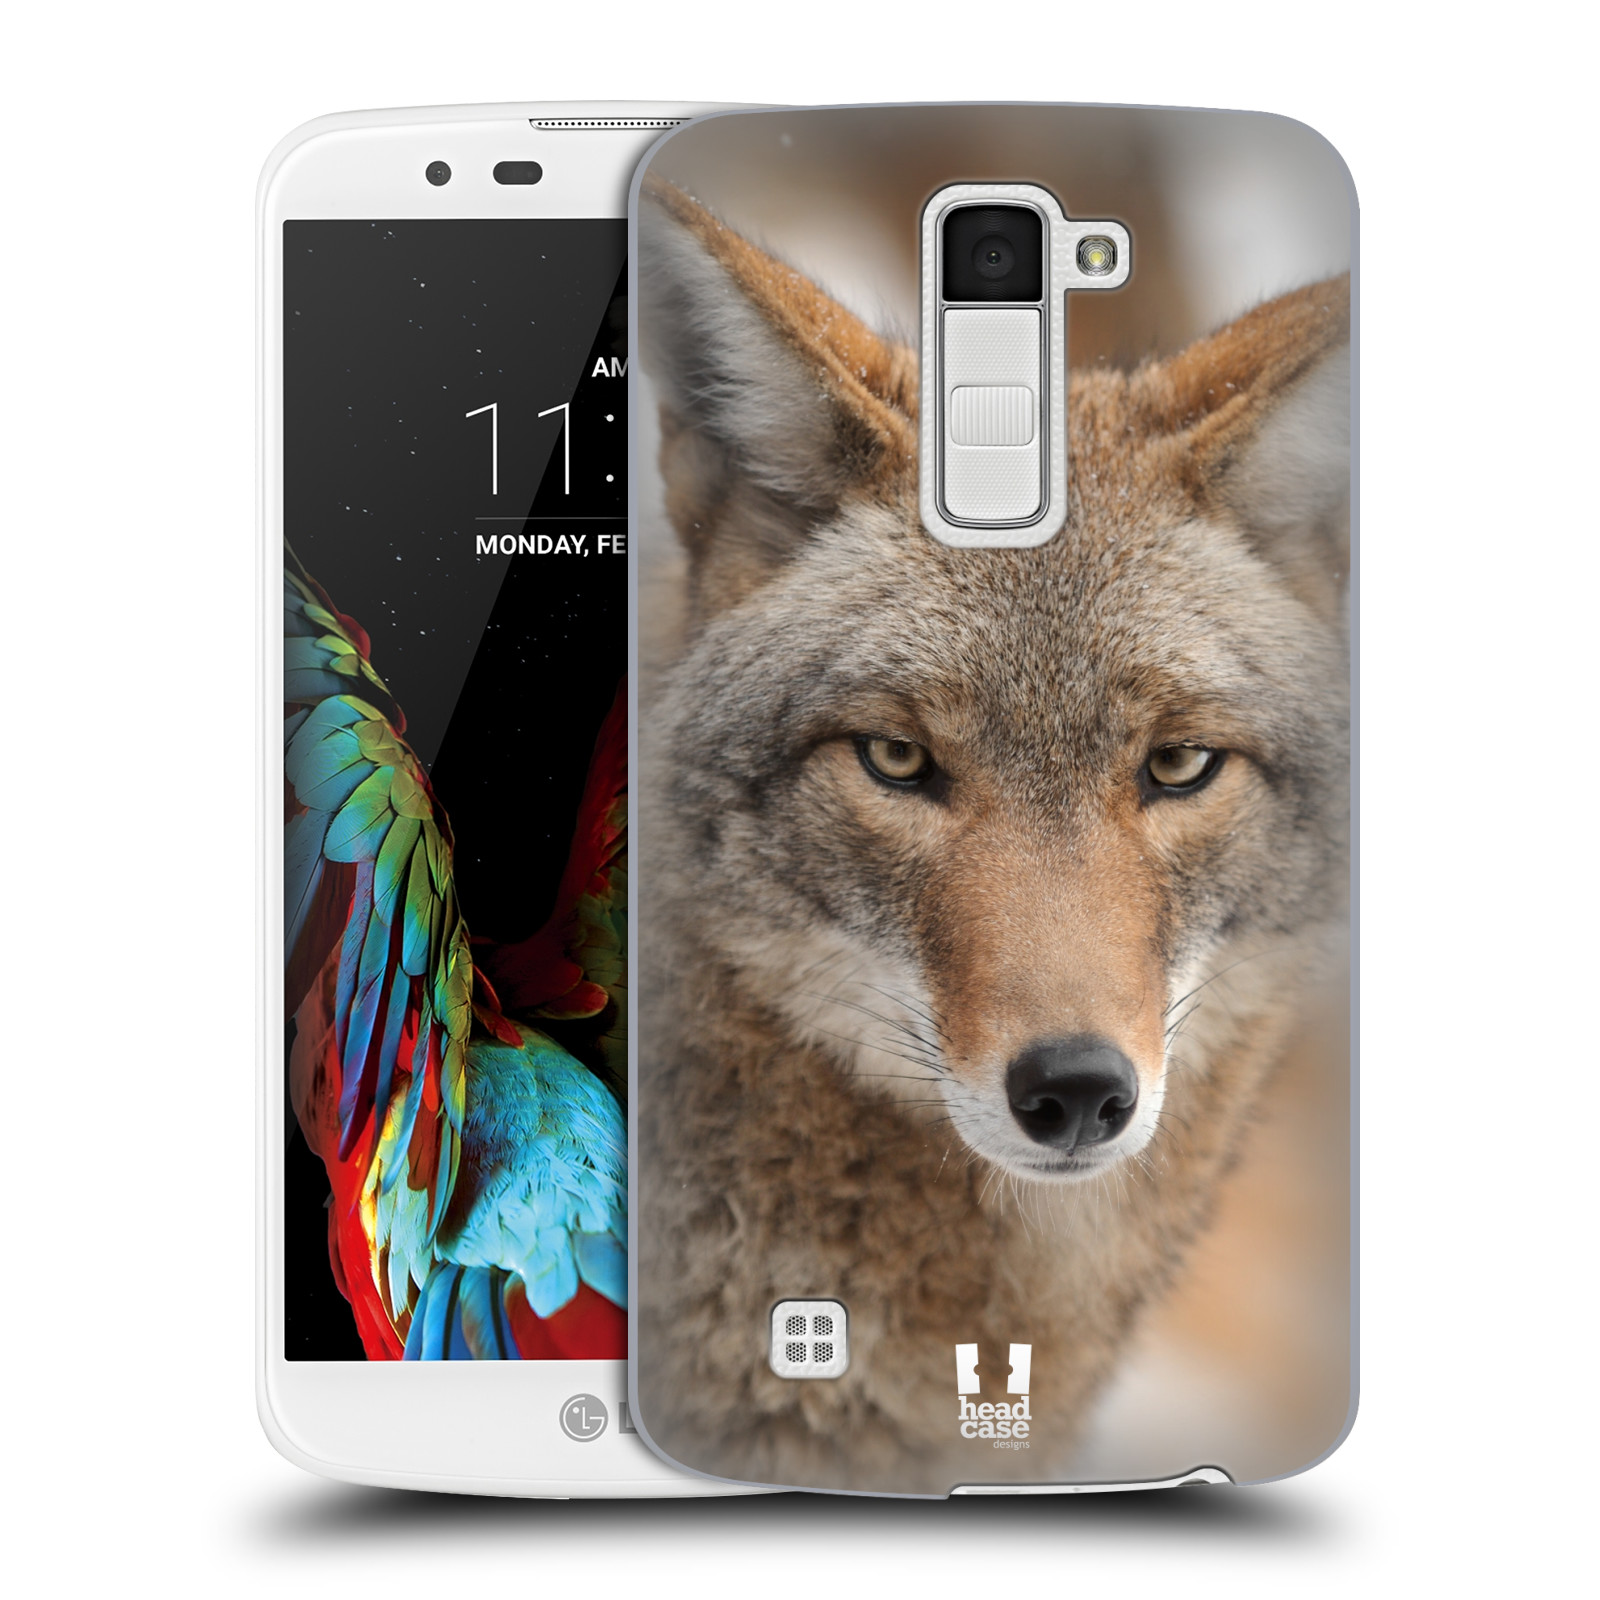 HEAD CASE plastový obal na mobil LG K10 vzor slavná zvířata foto kojot